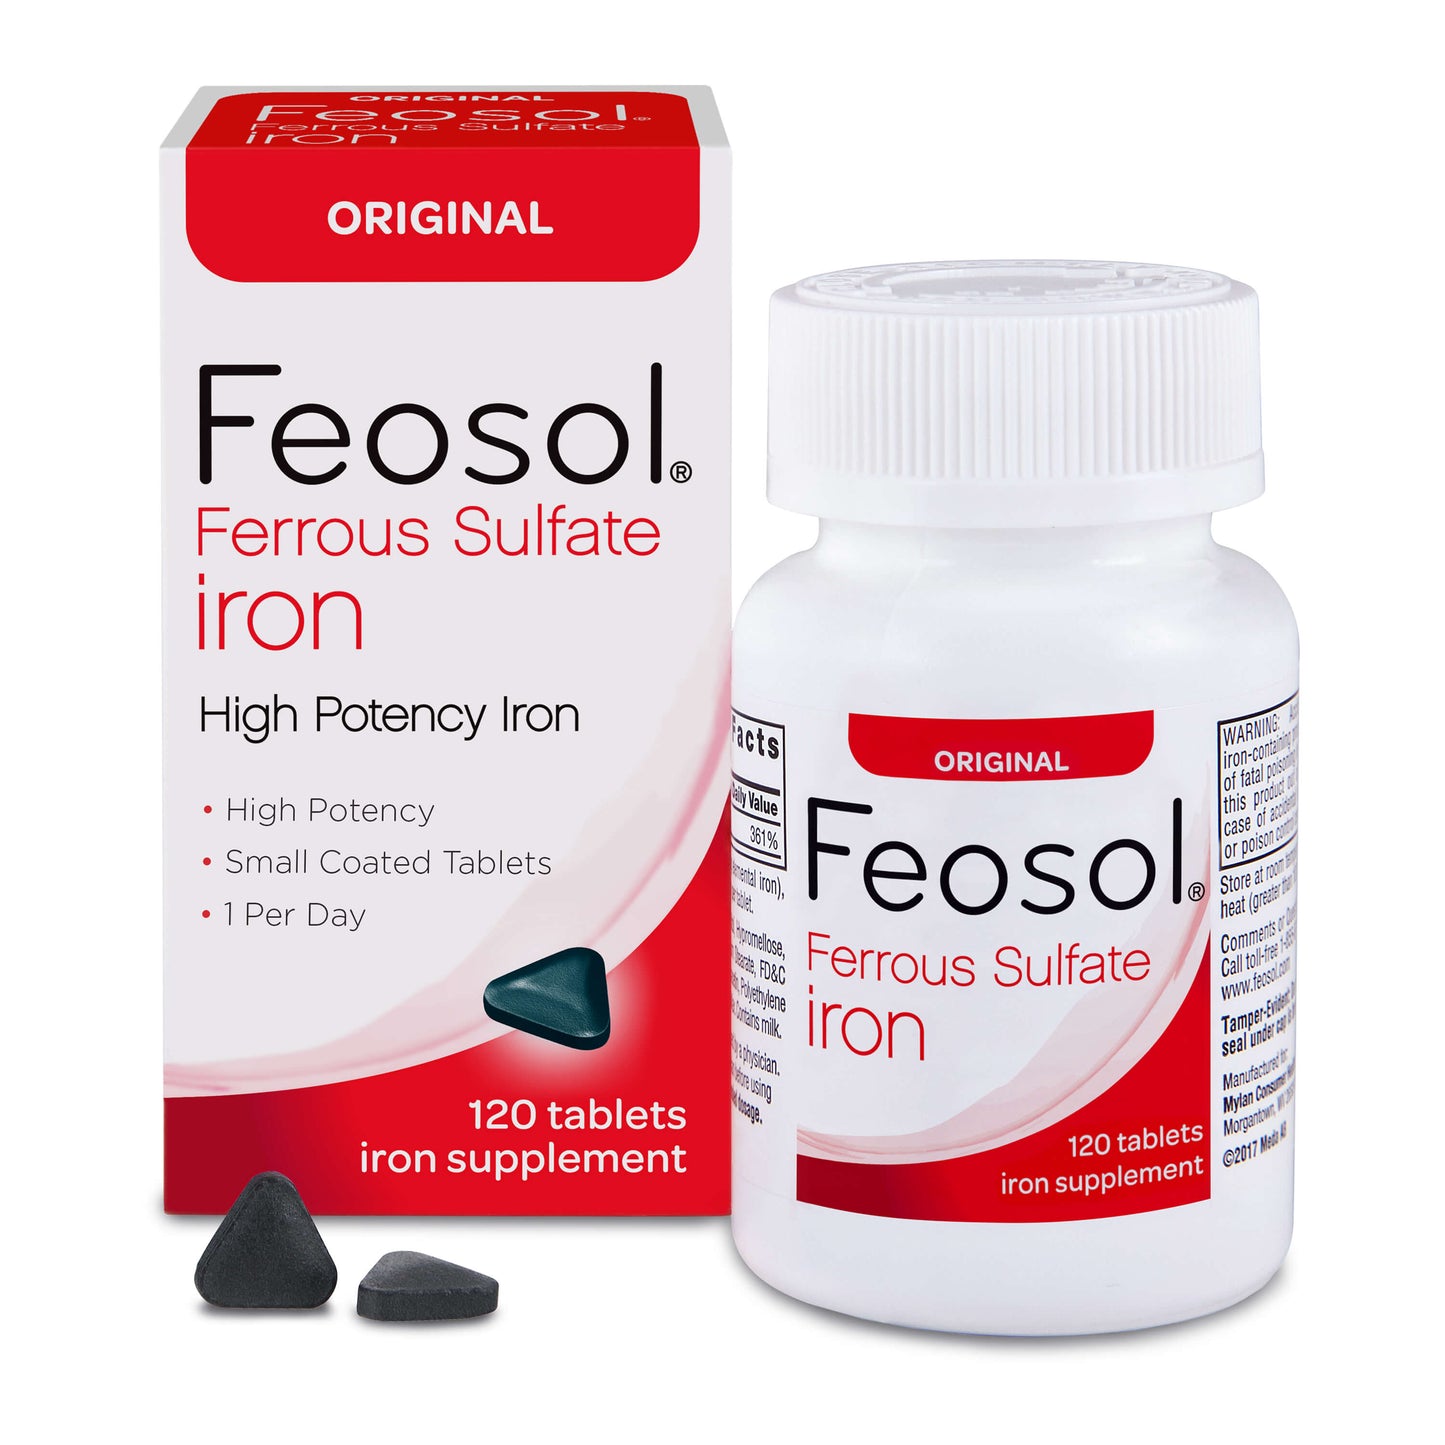 Feosol Original